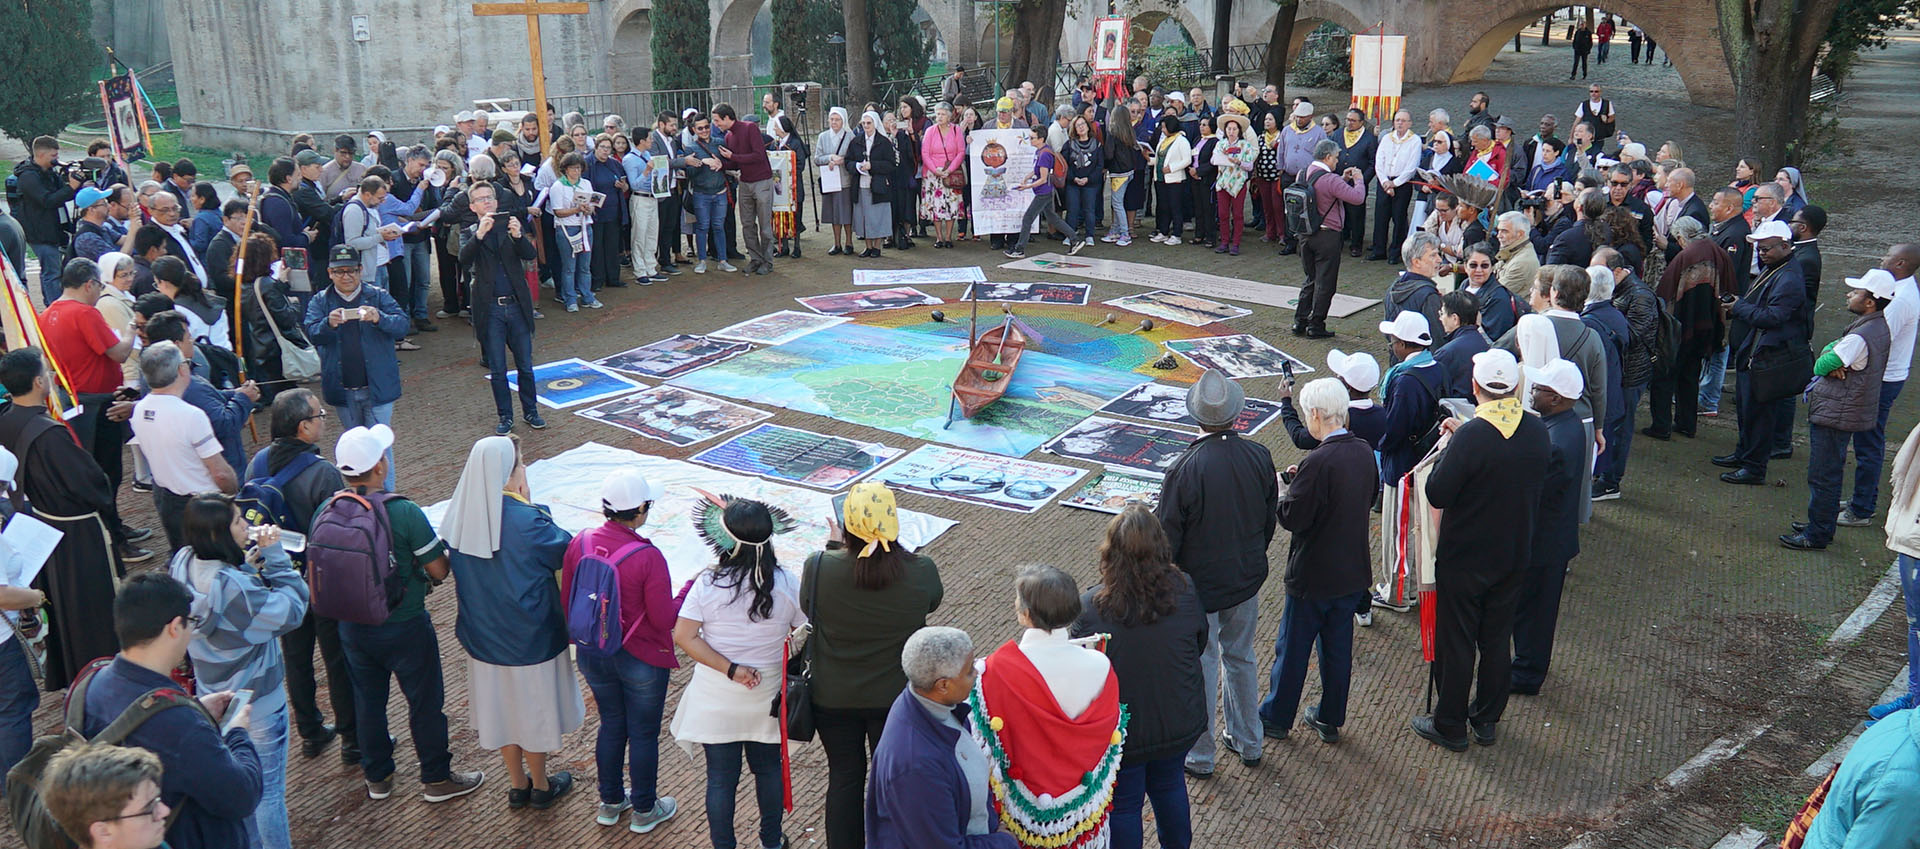 Una Via Crucis per i nostri giorni proposta dalla coalizione Amazzonia: Casa Comune